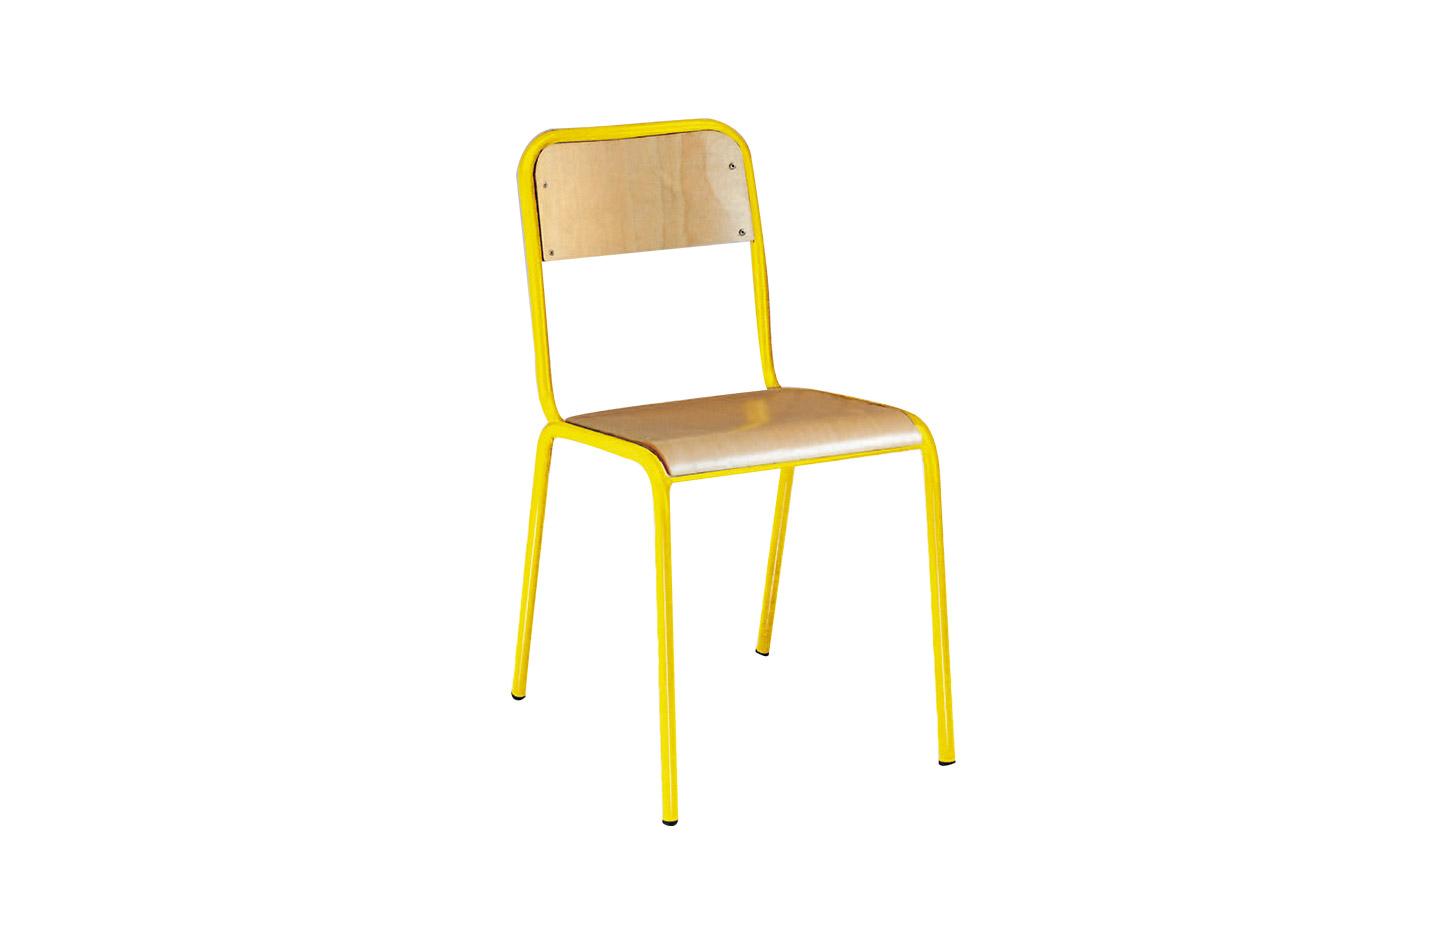 Chaise scolaire en hêtre naturel vernis avec ou sans accoudoirs, gamme Giono - France Bureau